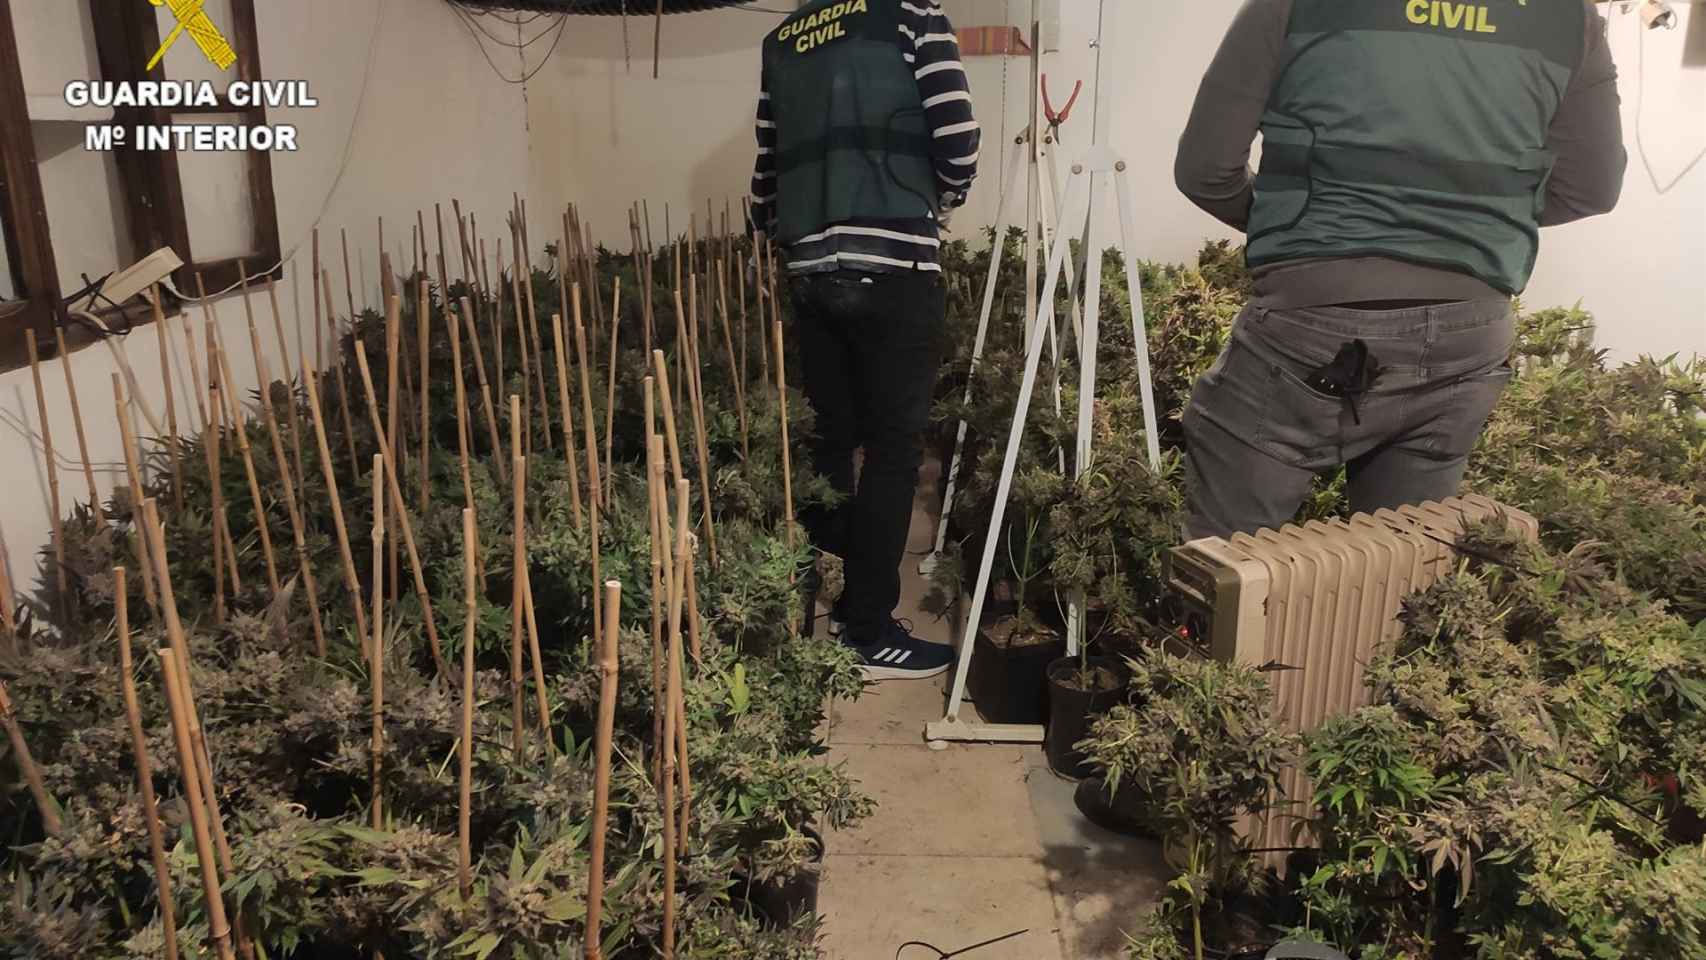 Plantación indoor de marihuana en Cuenca. Foto: Guardia Civil